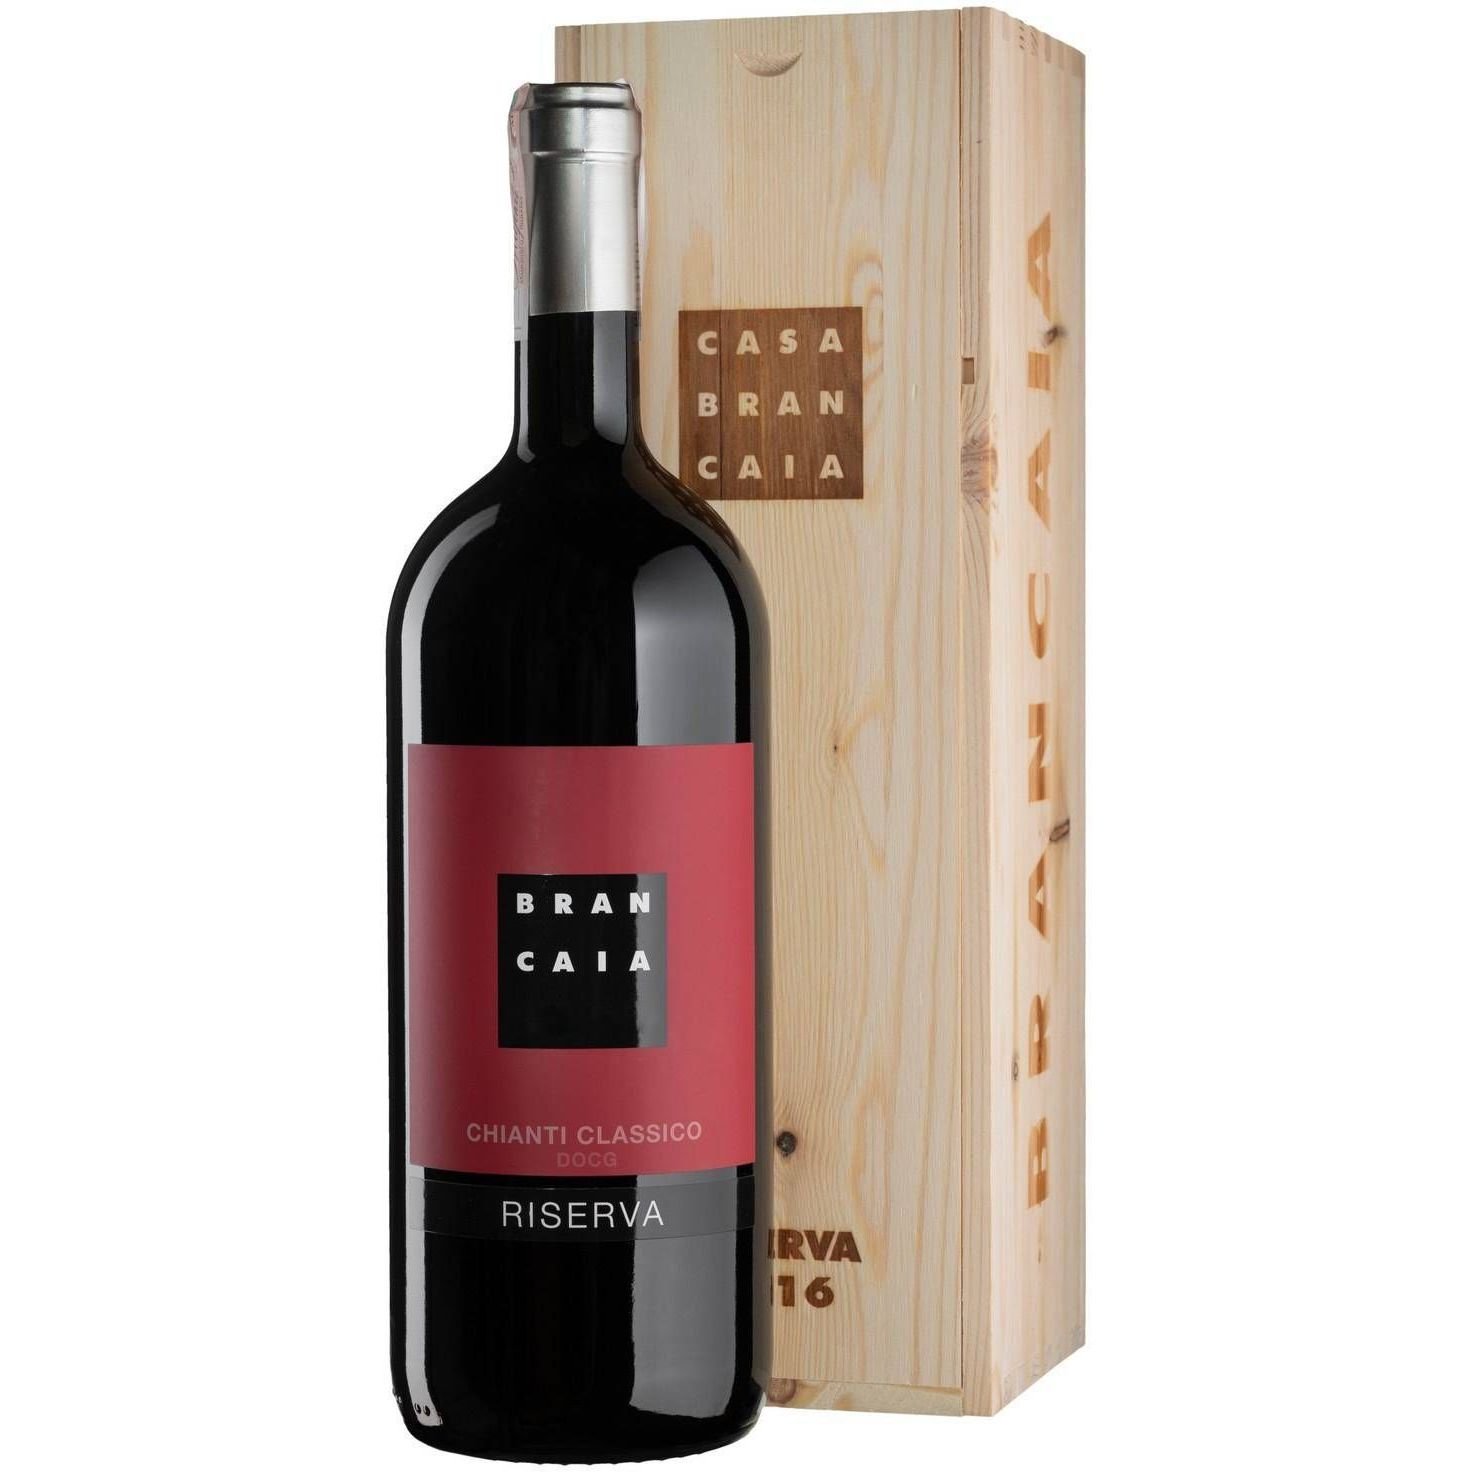 Вино Brancaia Chianti Classico Riserva 2018, красное, сухое, в подарочной упаковке, 1,5 л - фото 1